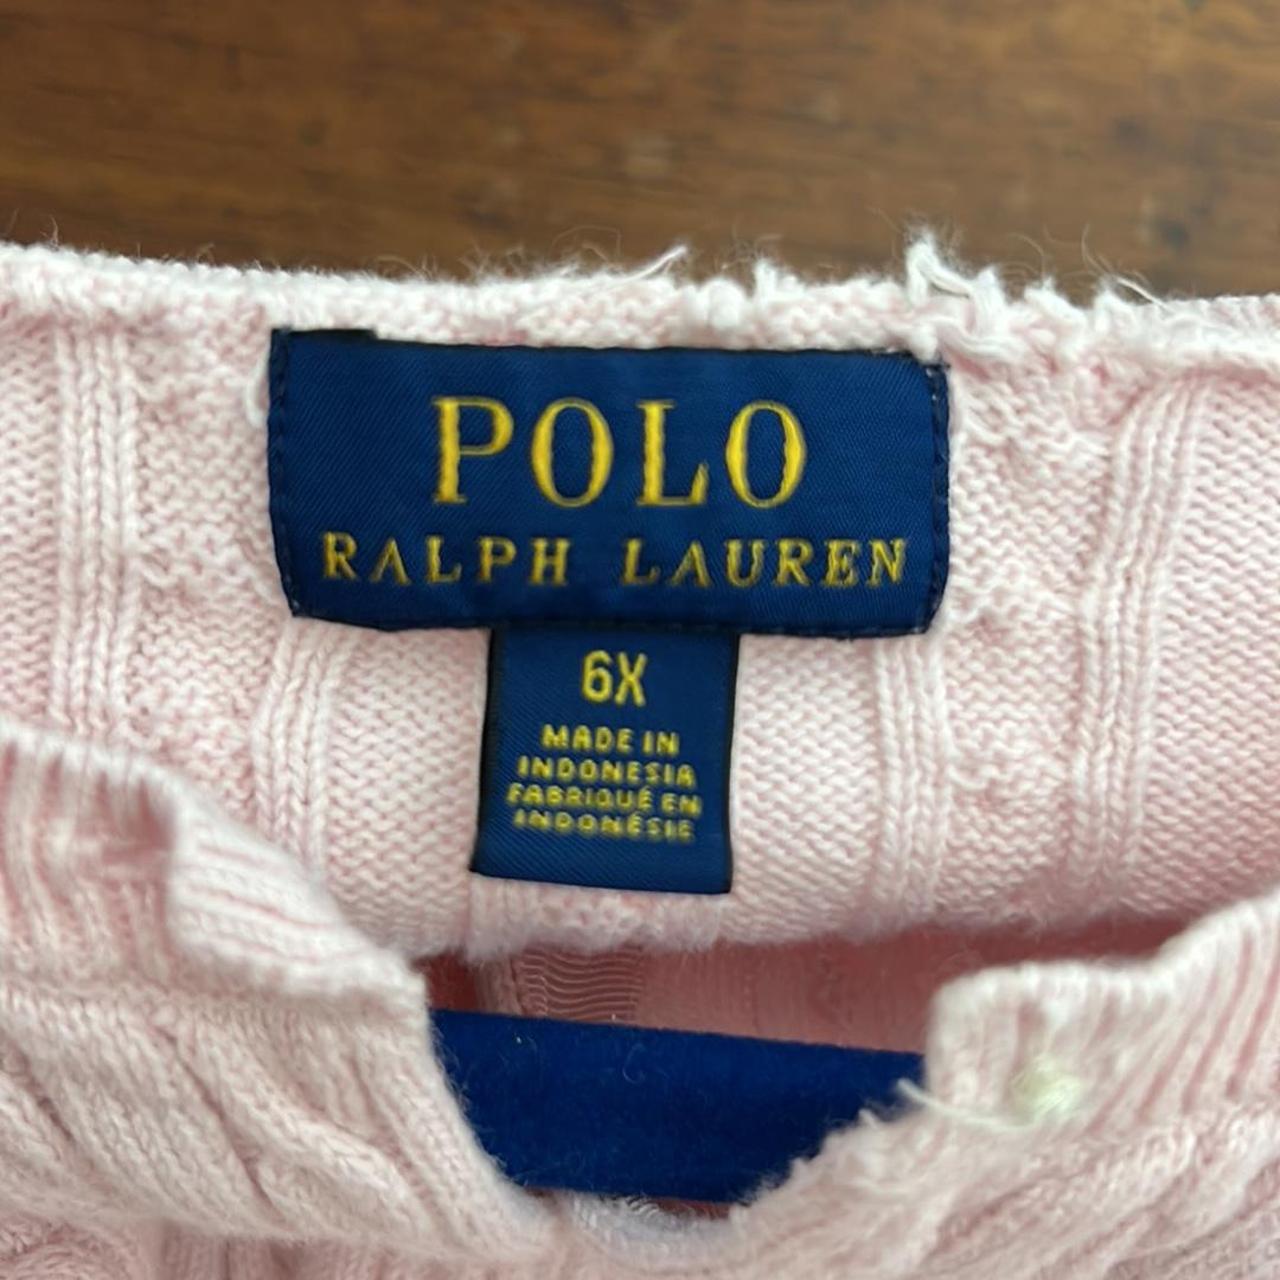 Polo Ralph Lauren pink button up sweater size 6X... - Depop